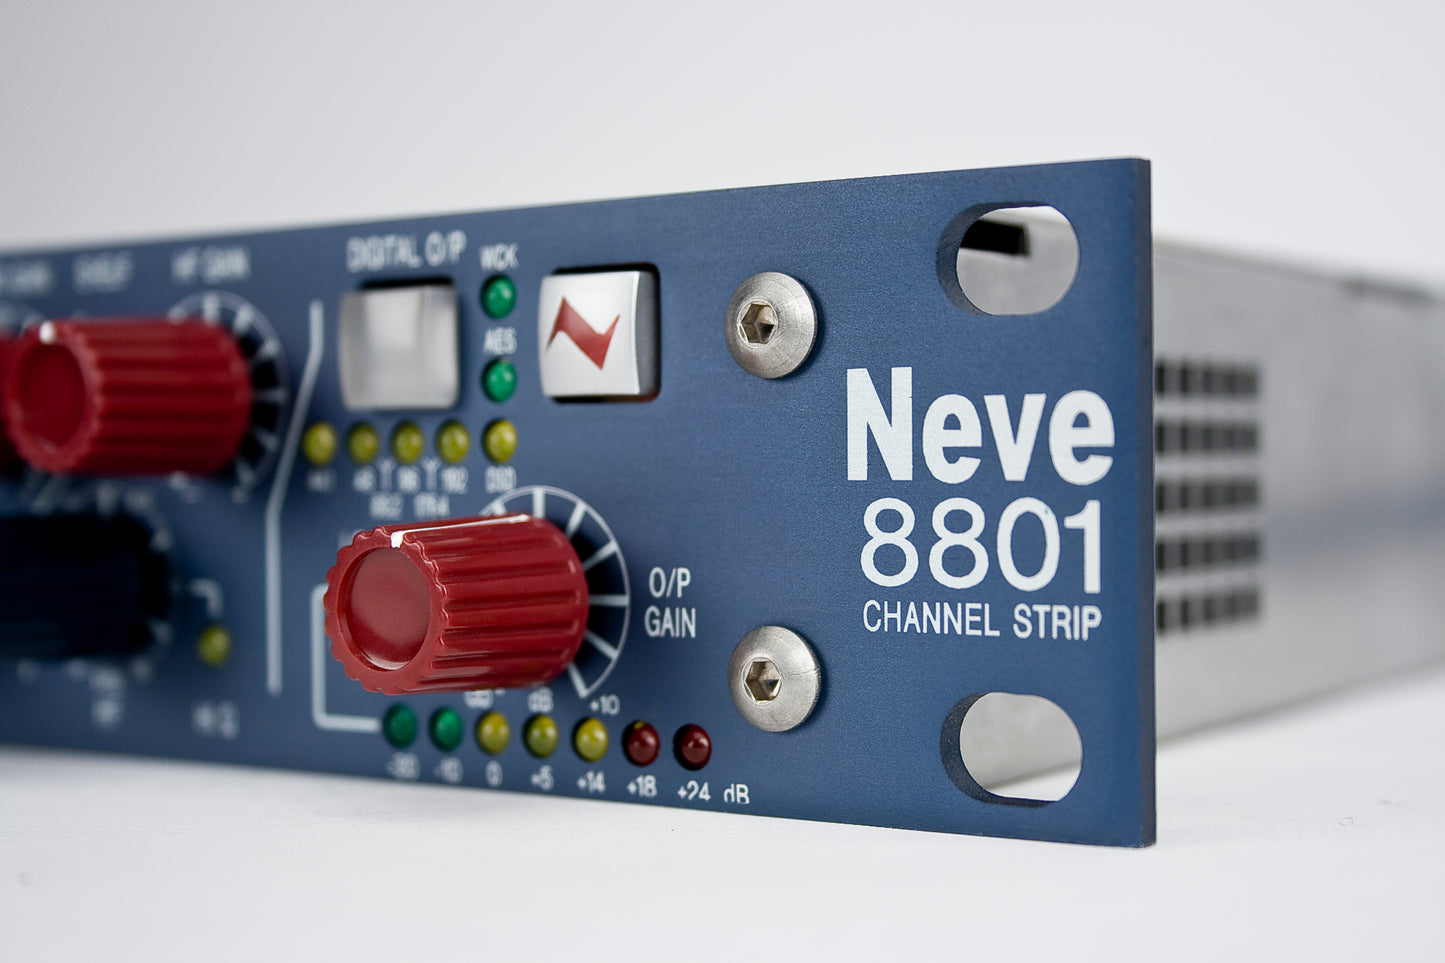 AMS Neve 8801